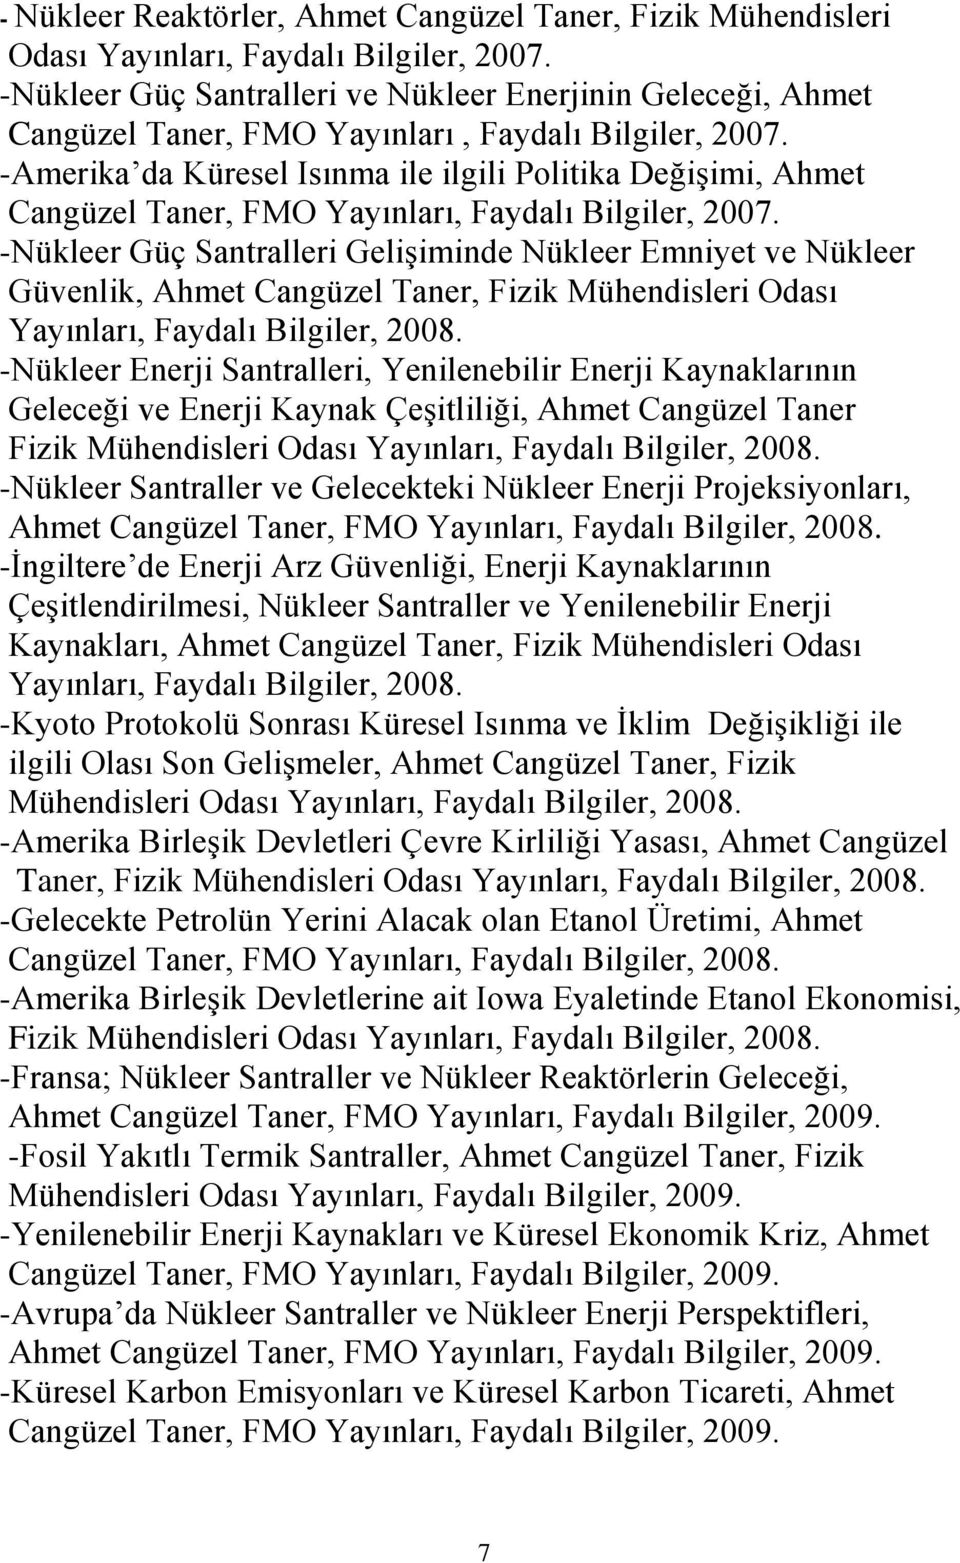 -Amerika da Küresel Isınma ile ilgili Politika Değişimi, Ahmet Cangüzel Taner, FMO Yayınları, Faydalı Bilgiler, 2007.